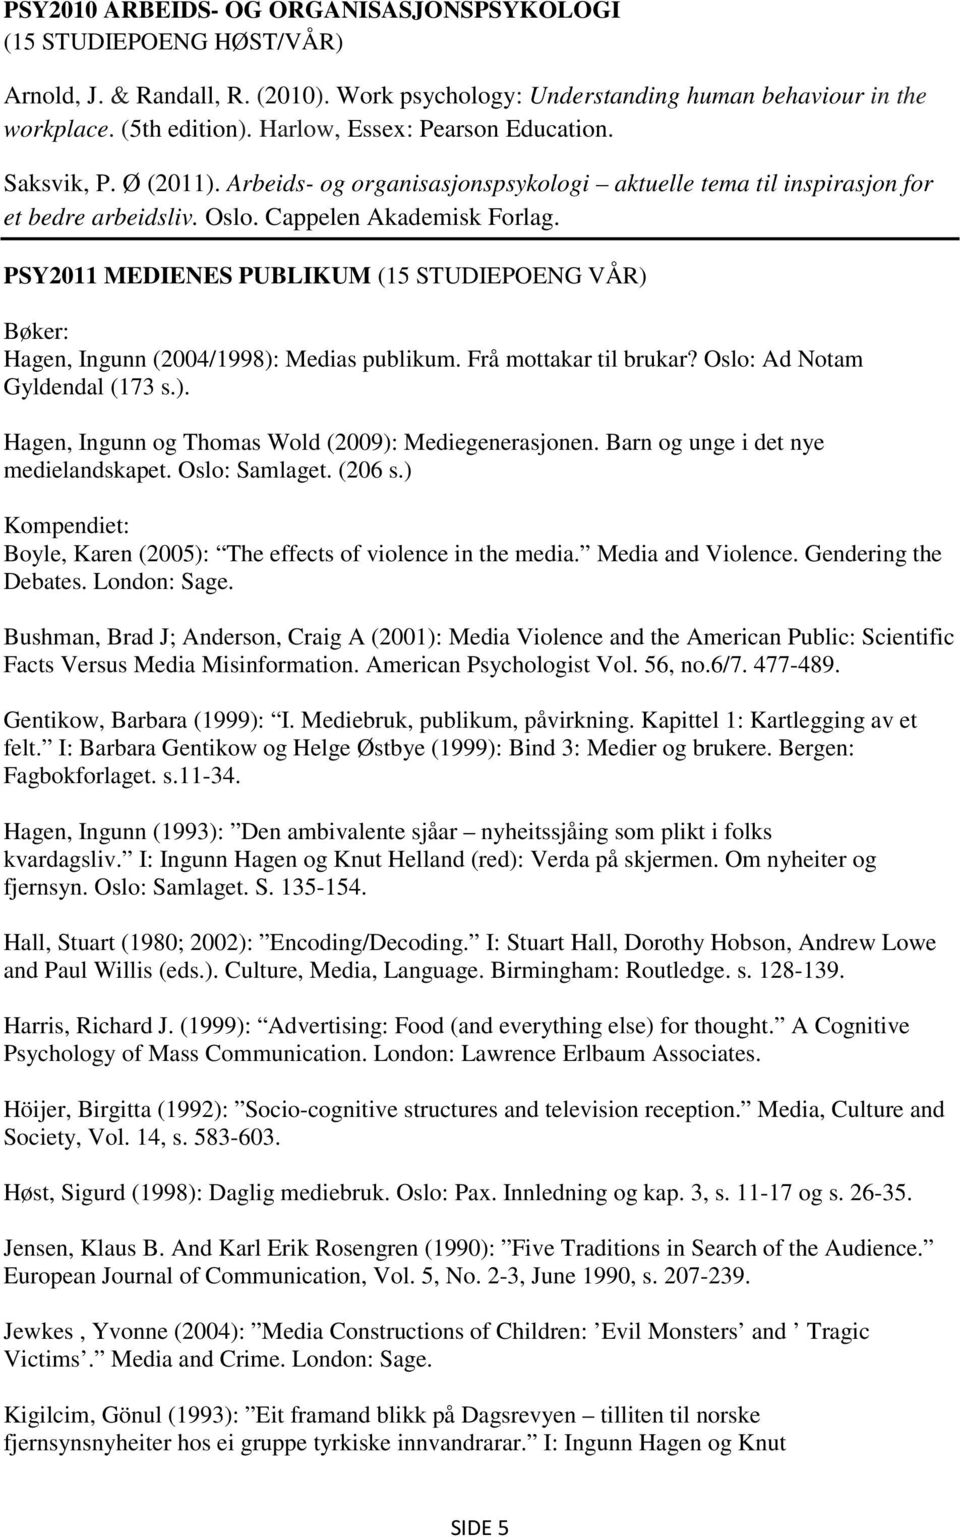 PSY2011 MEDIENES PUBLIKUM (15 STUDIEPOENG VÅR) Bøker: Hagen, Ingunn (2004/1998): Medias publikum. Frå mottakar til brukar? Oslo: Ad Notam Gyldendal (173 s.). Hagen, Ingunn og Thomas Wold (2009): Mediegenerasjonen.